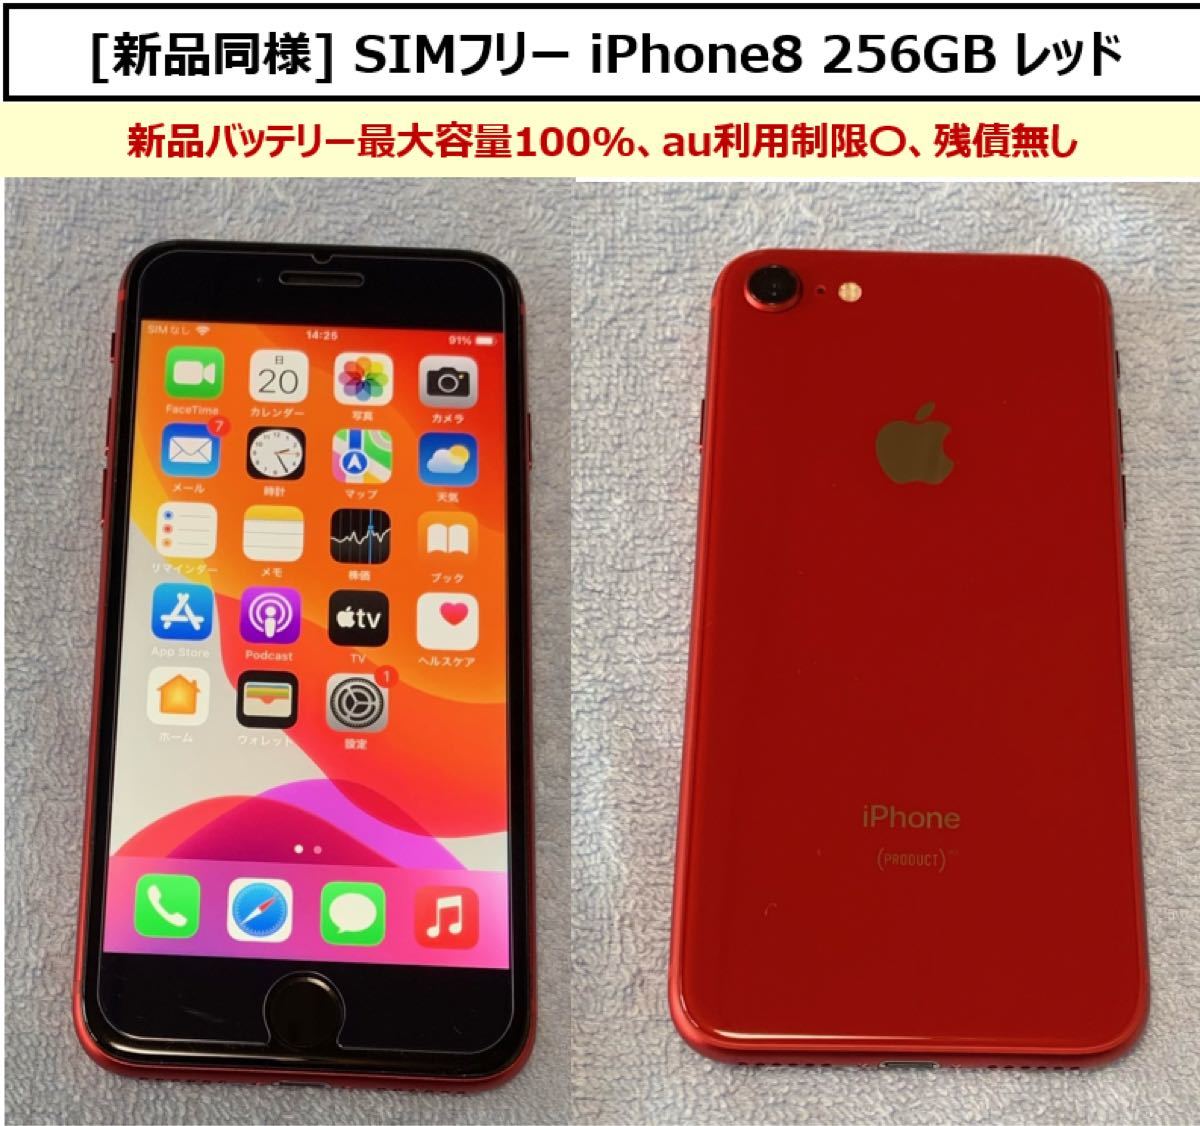 最安値】 iPhone 8 256GB SIMフリー バッテリー100% asakusa.sub.jp